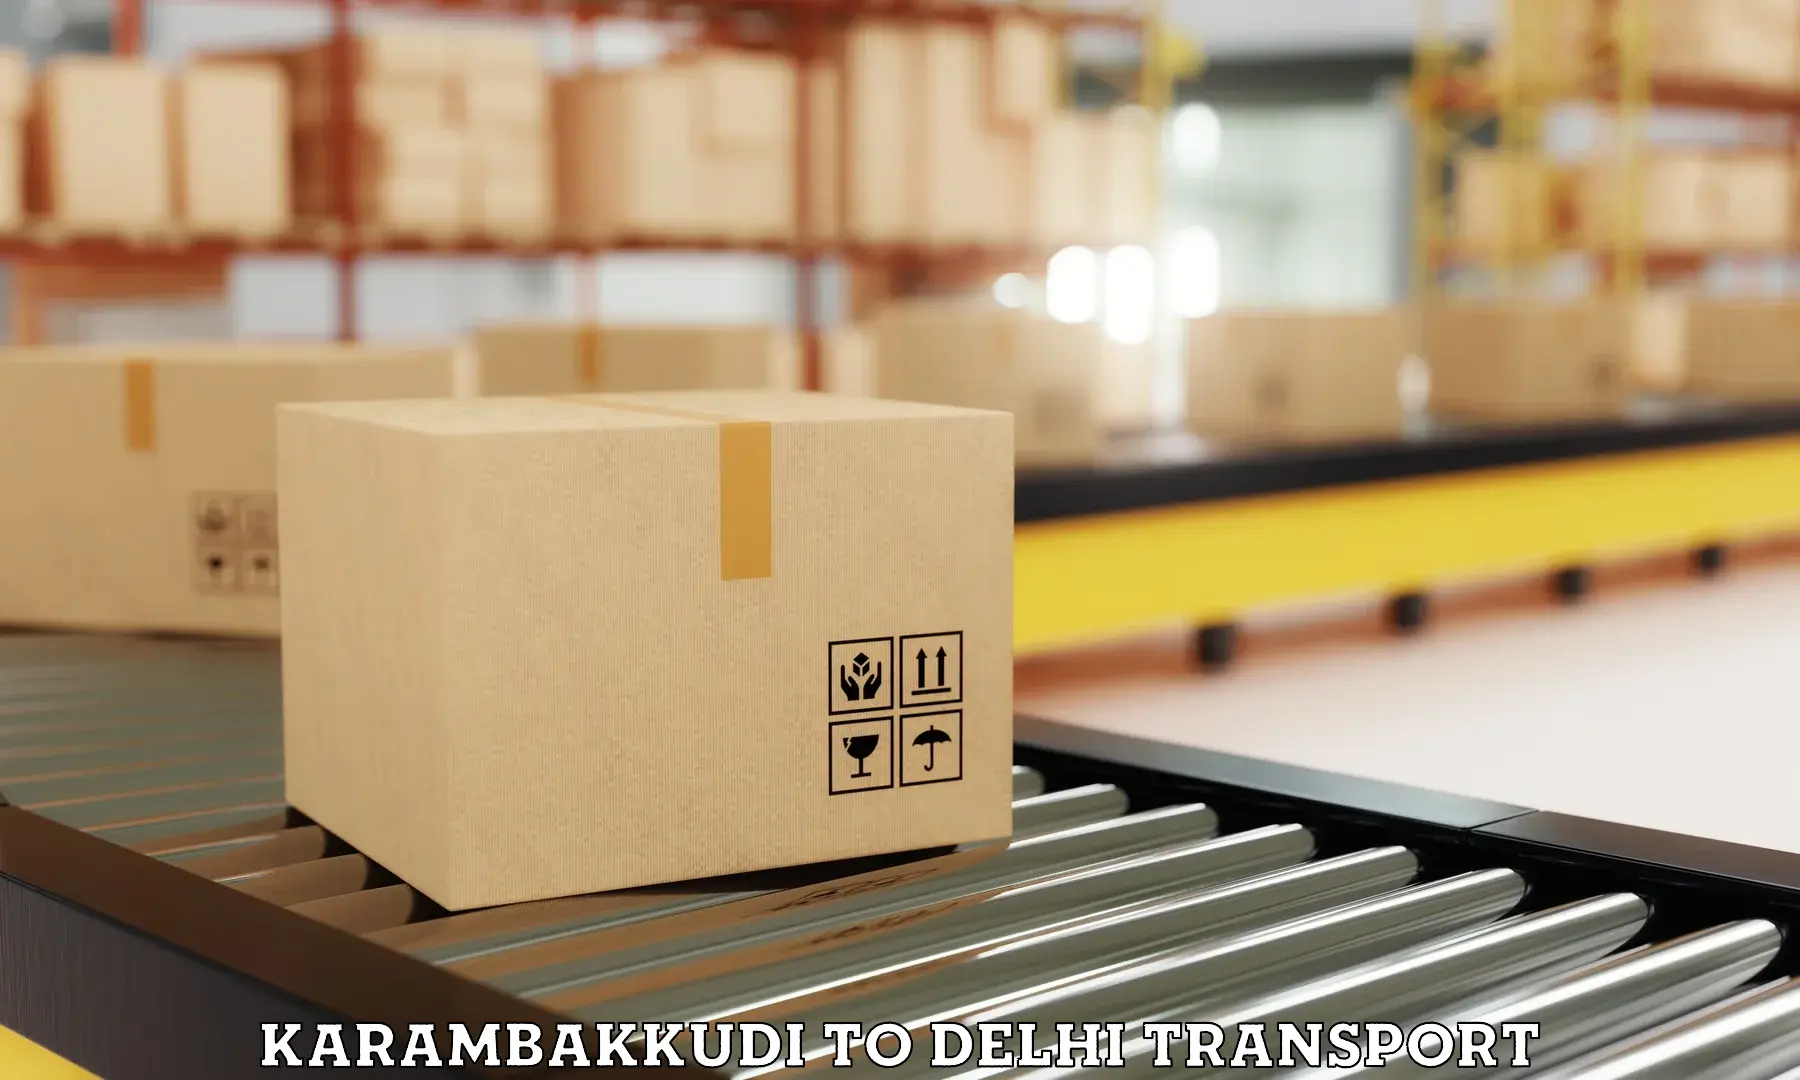 Shipping partner Karambakkudi to Guru Gobind Singh Indraprastha University New Delhi